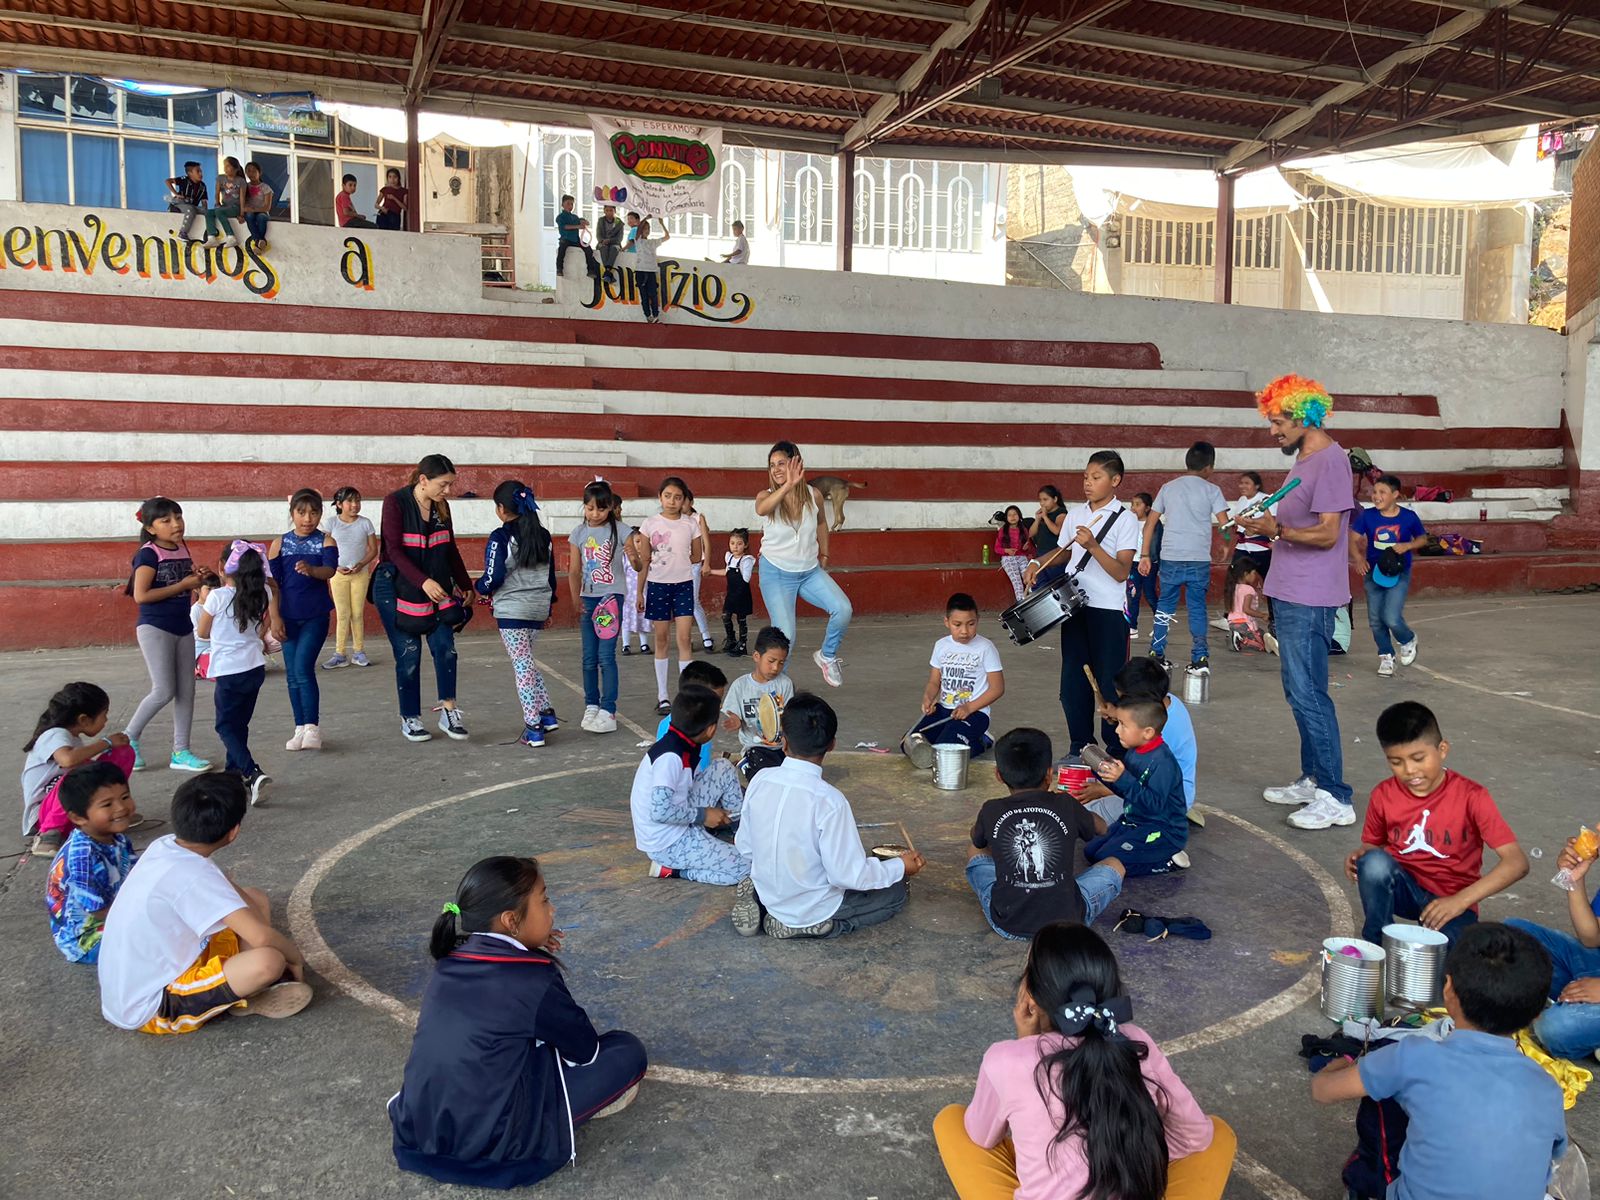 Pequeño relato sobre el circo social: Convite cultural en Janitzio, Michoacán